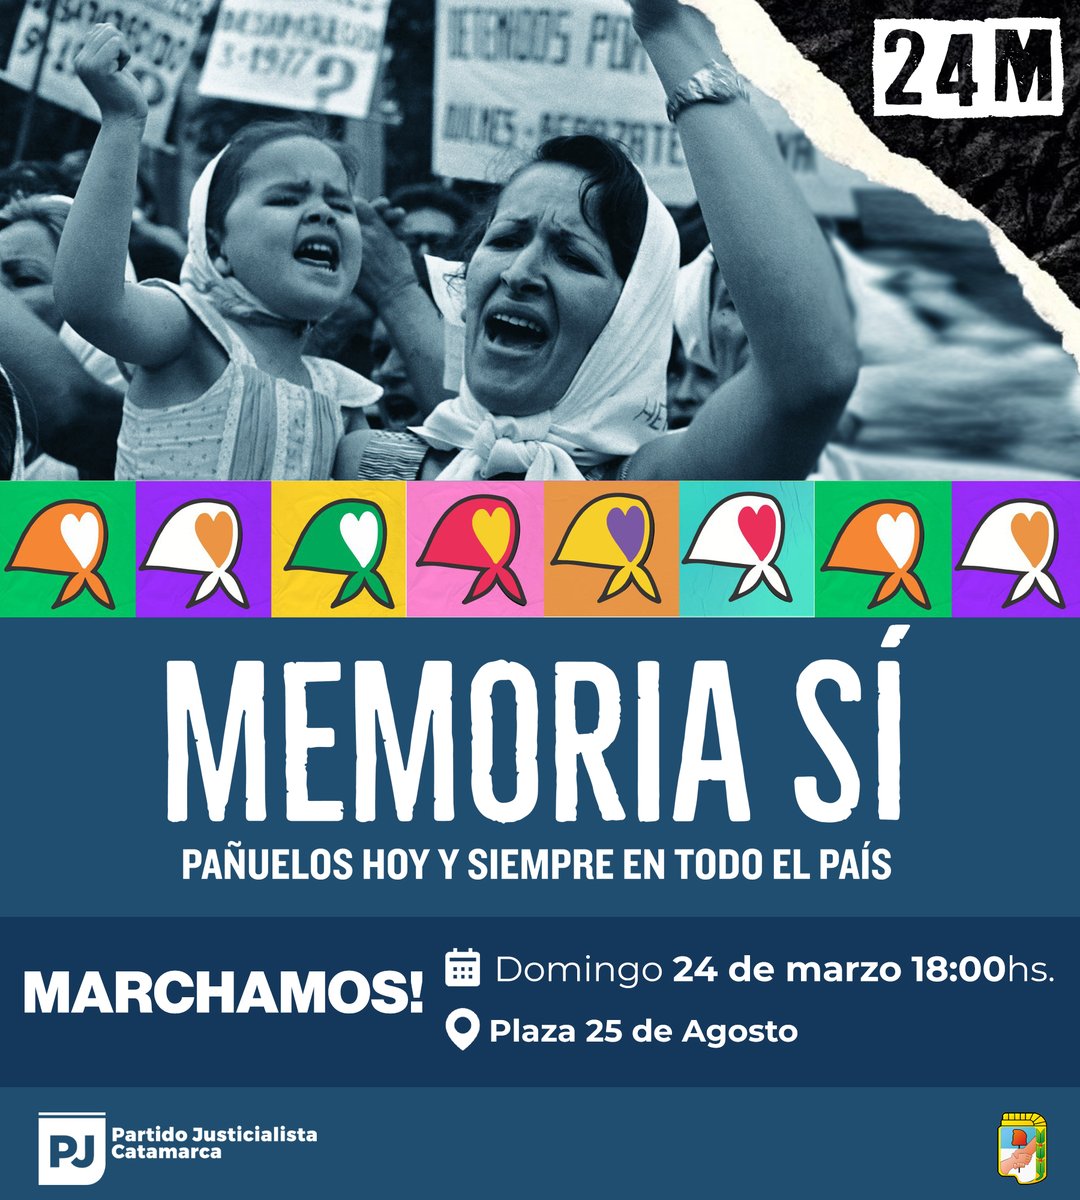 Este #24M nos sumamos a la marcha. ¡En Catamarca, PAÑUELOS HOY Y SIEMPRE!

#MemoriaSÍ #SumemosPañuelos #48AñosDelGolpeGenocida